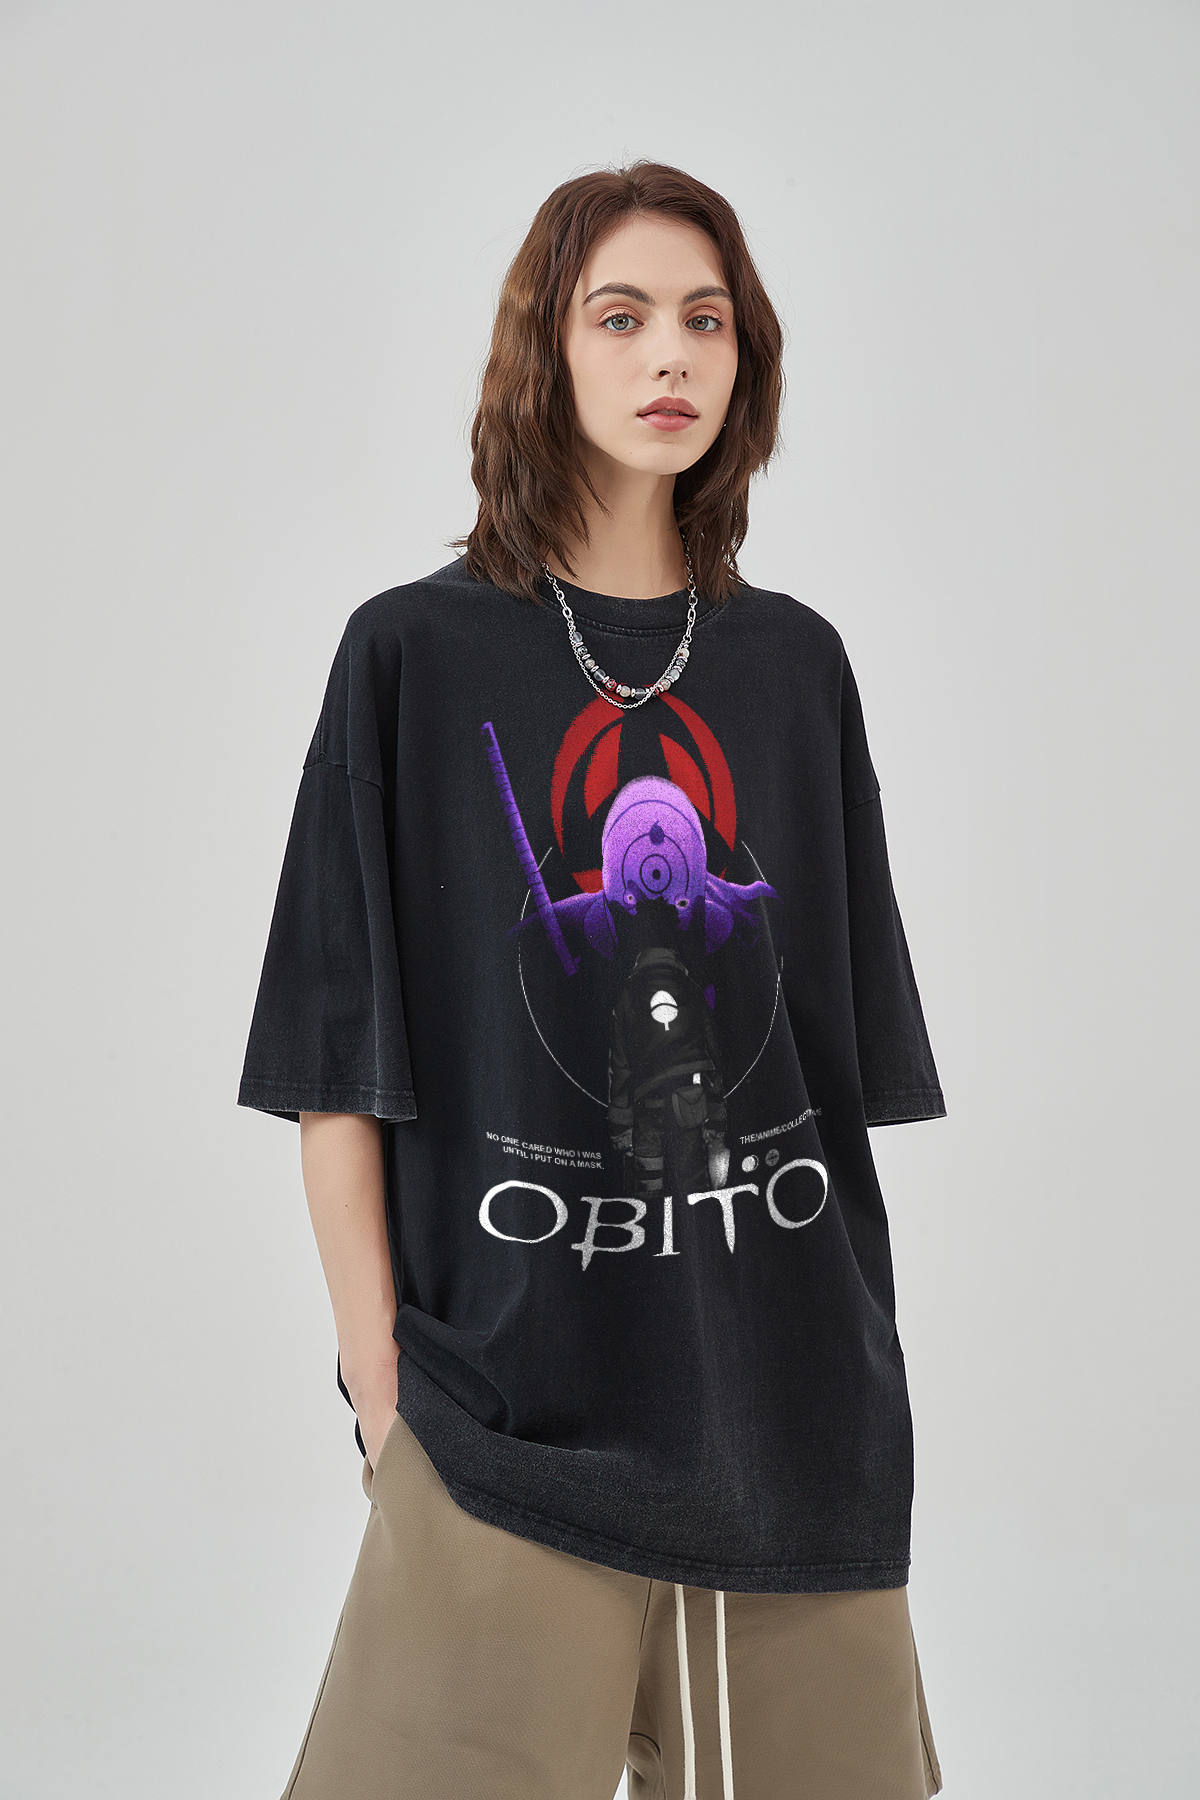 Obito Vintage Oversized T-Shirt